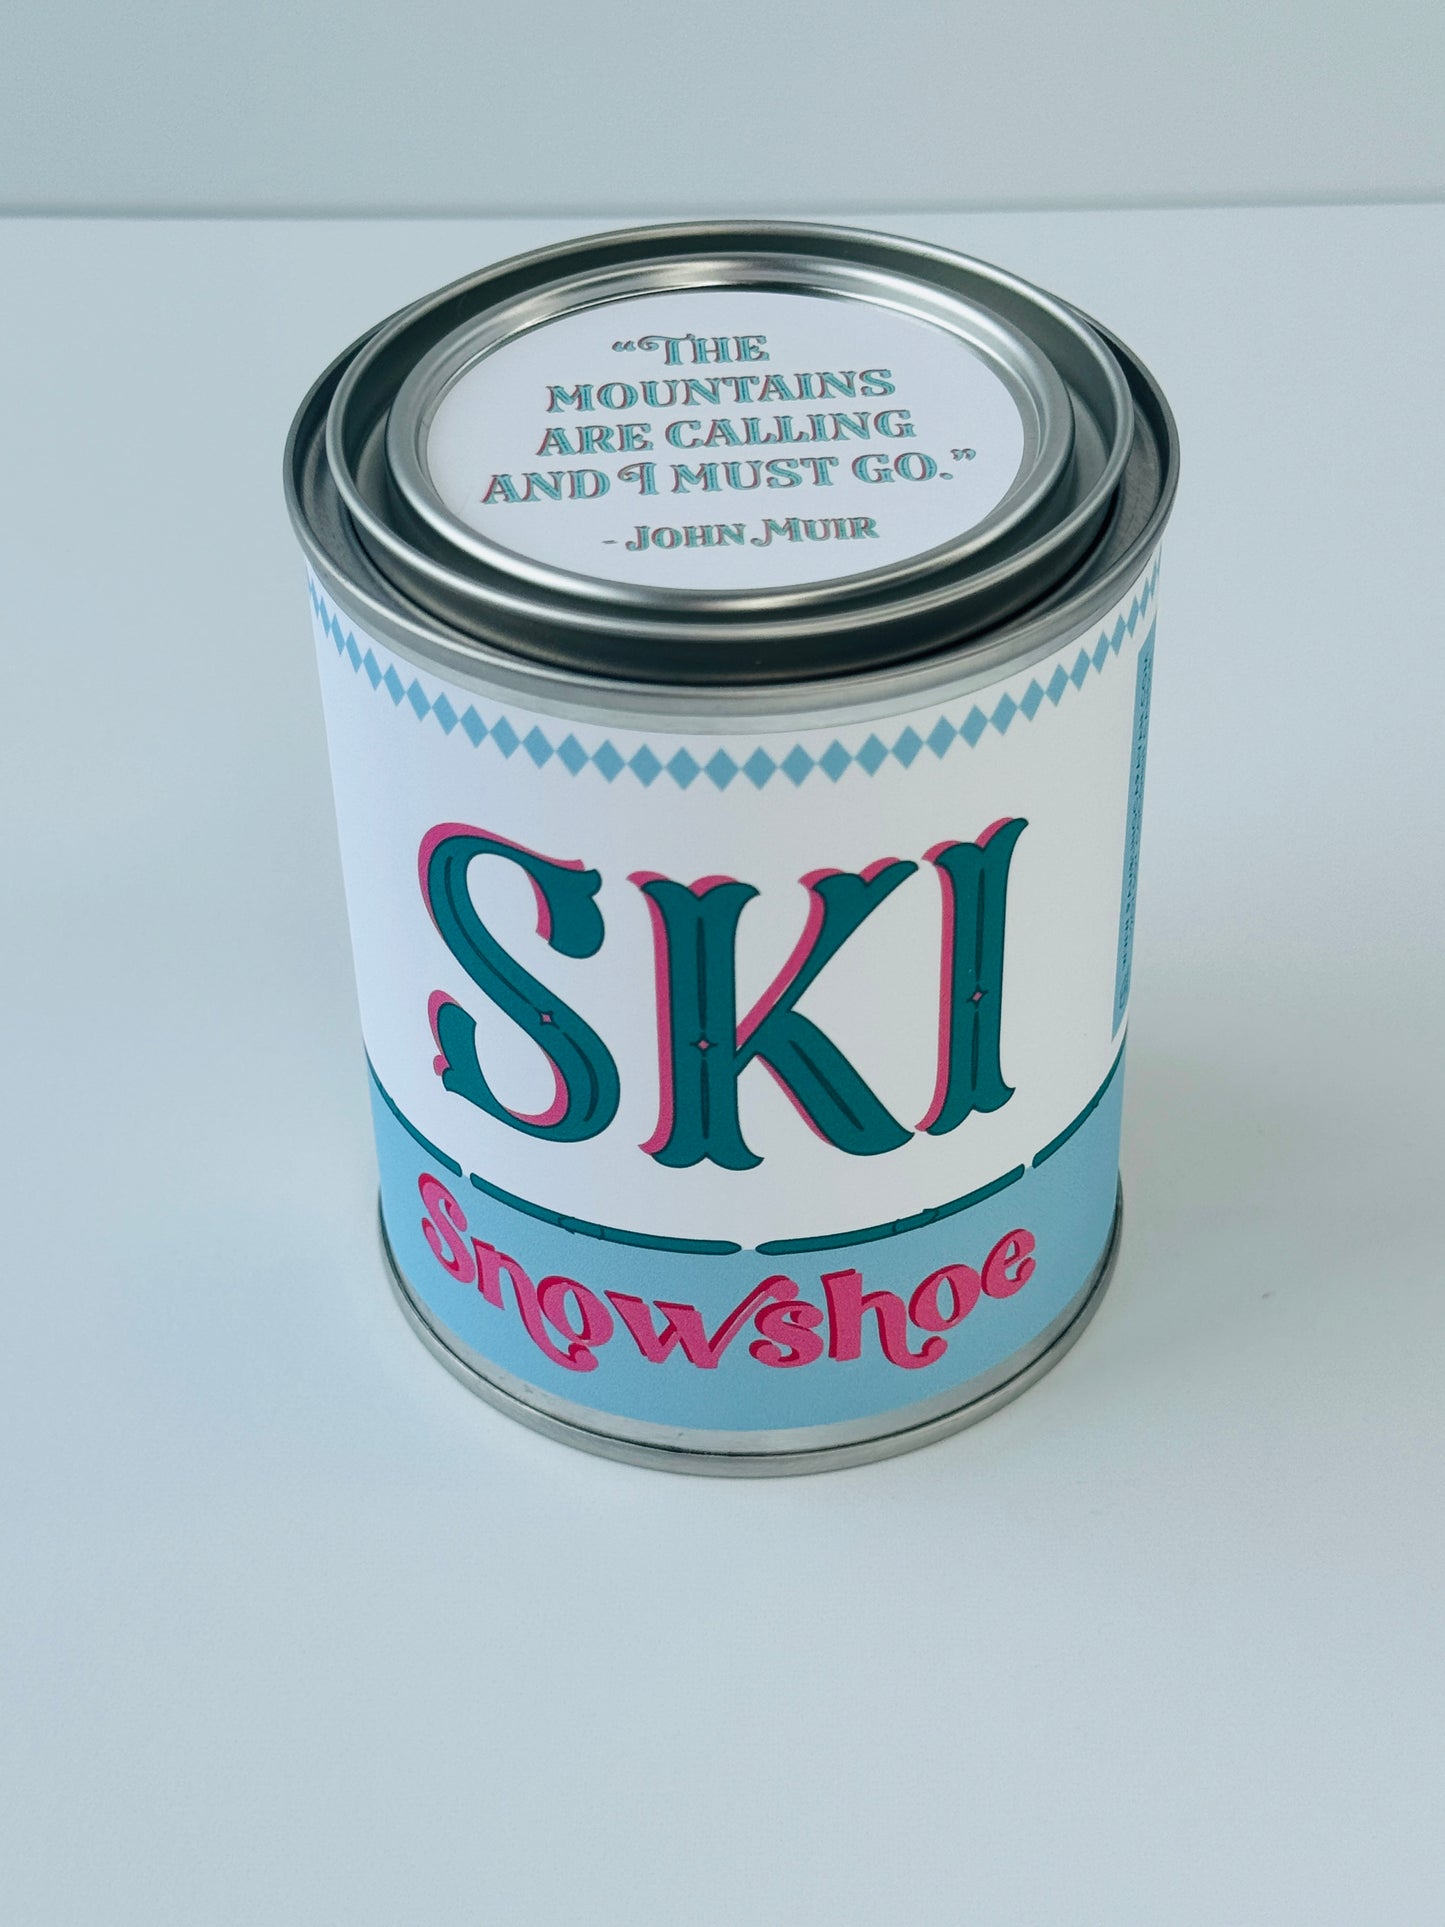 Ski Snowshoe - Paint Tin Candle